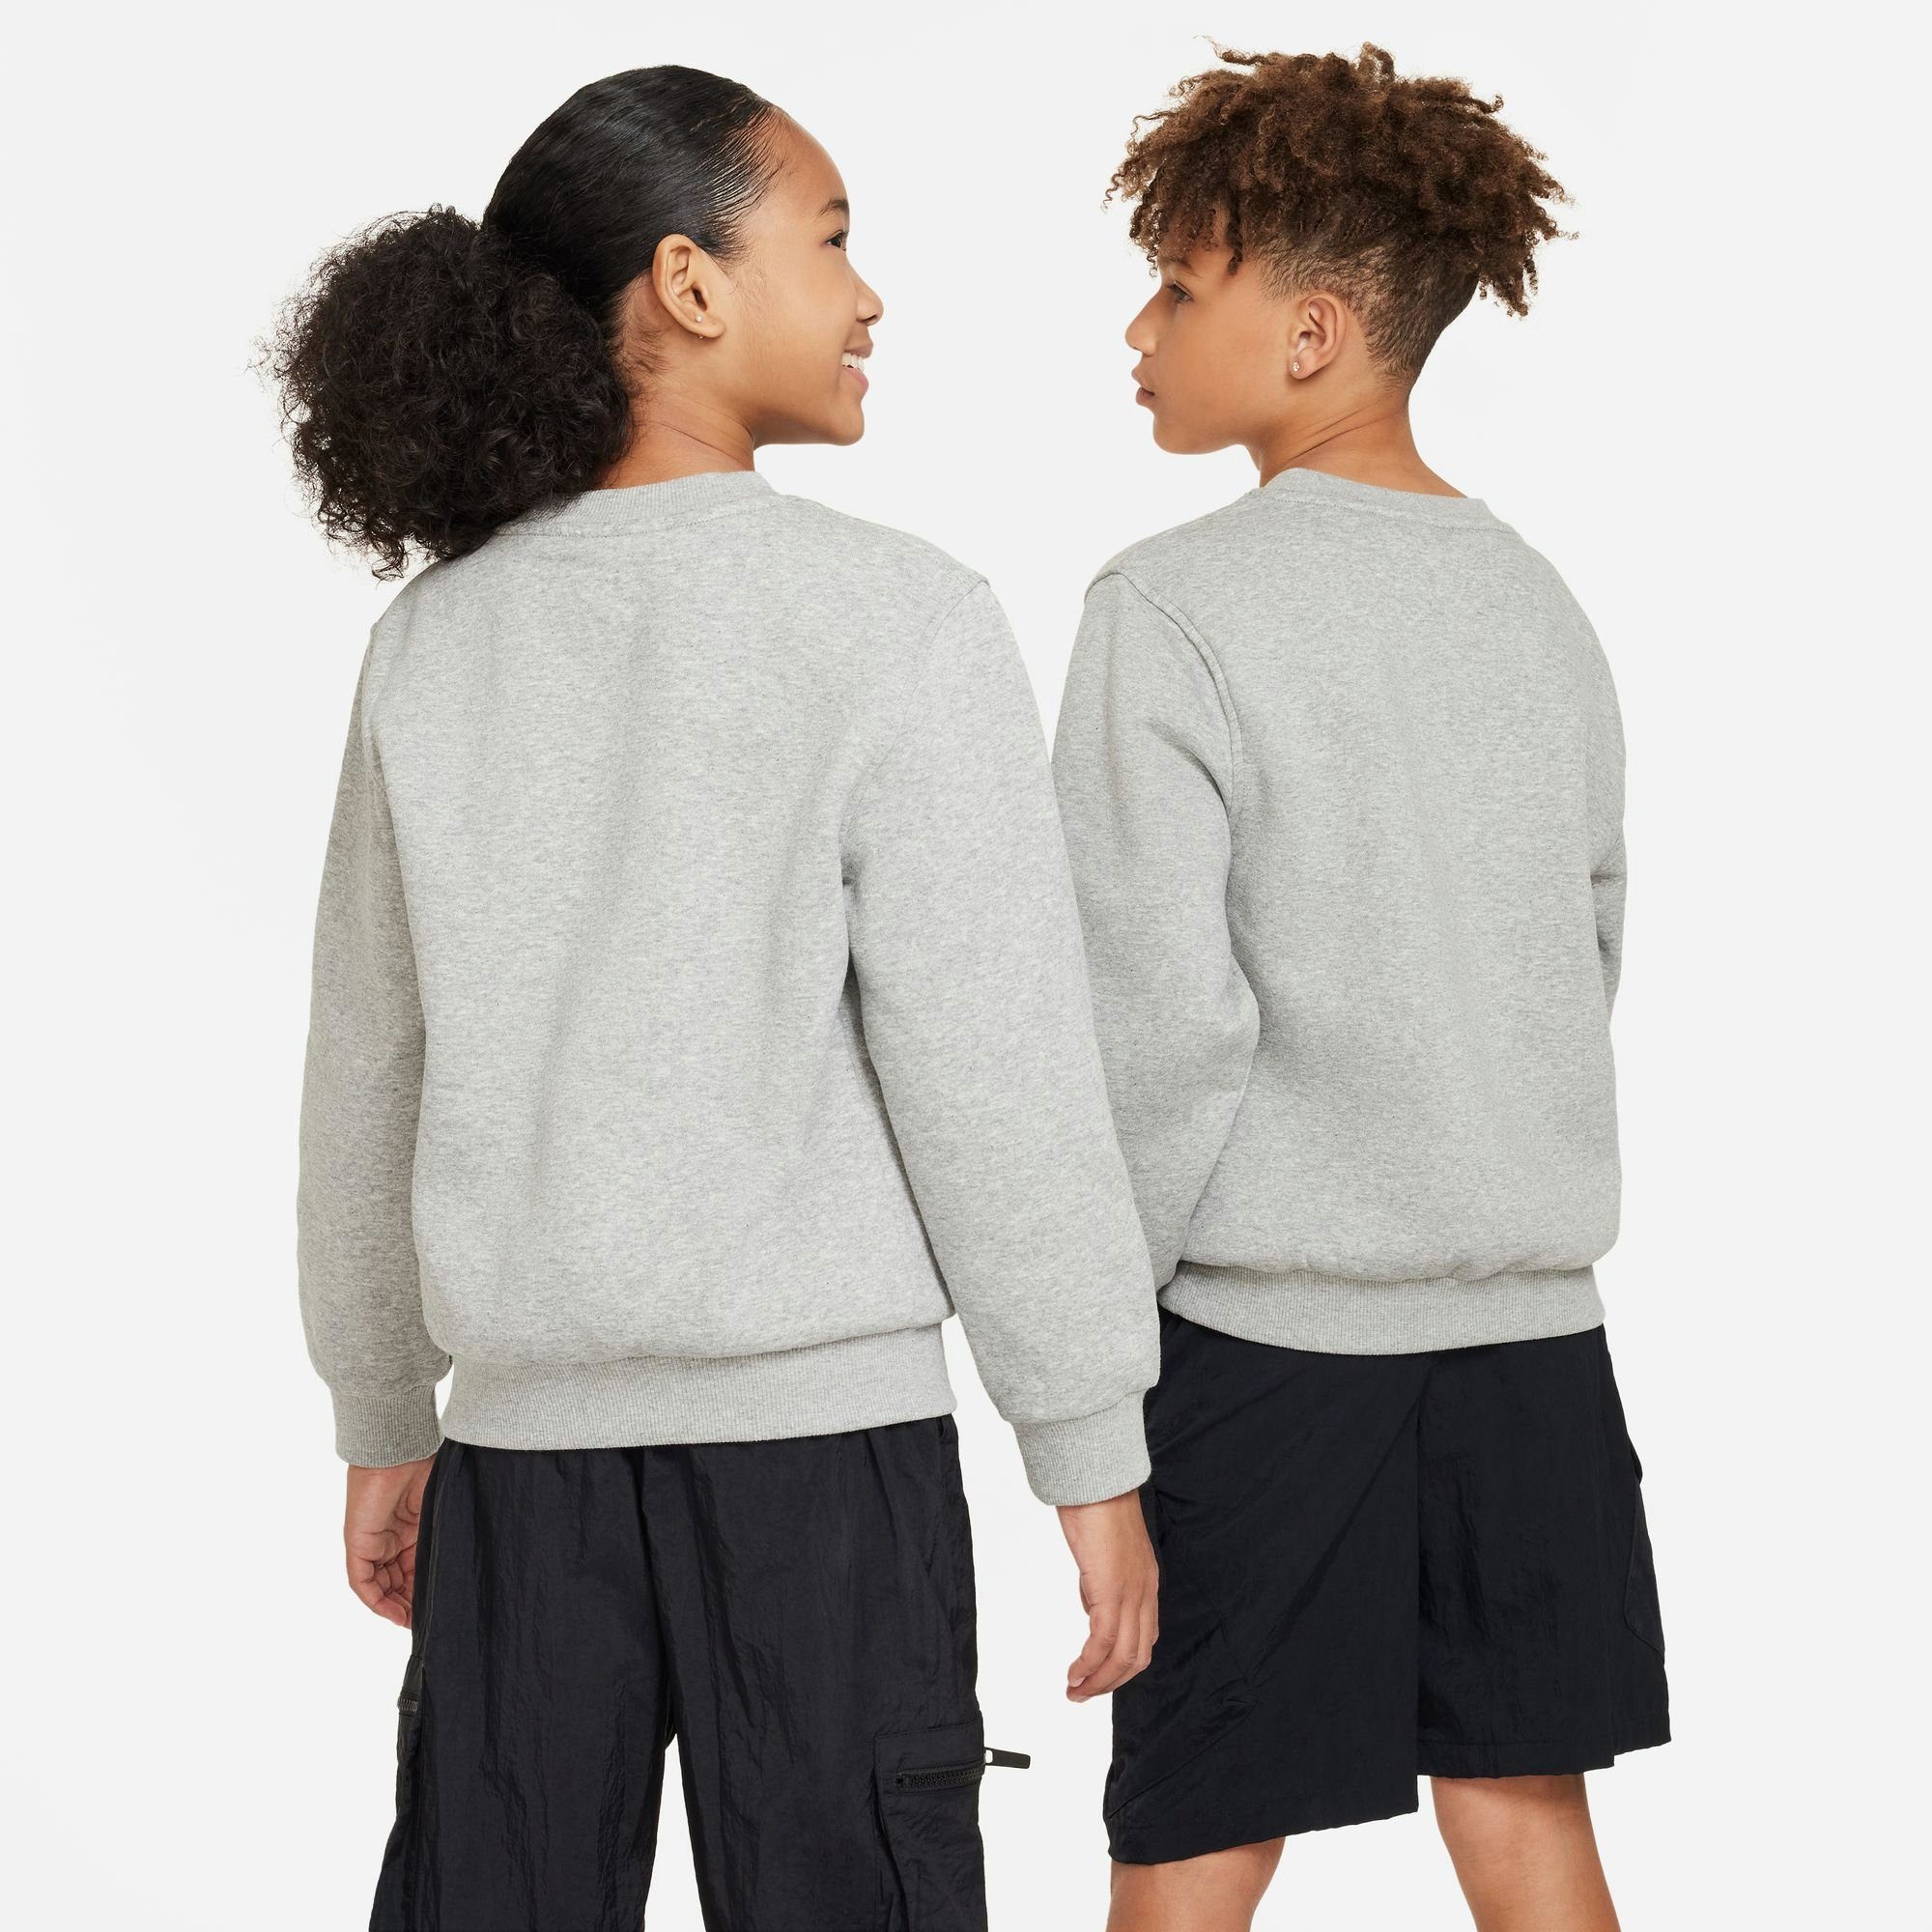 DK BIG Nike Sportswear KIDS' FLEECE Sweatshirt HEATHER/WHITE SWEATSHIRT GREY CLUB